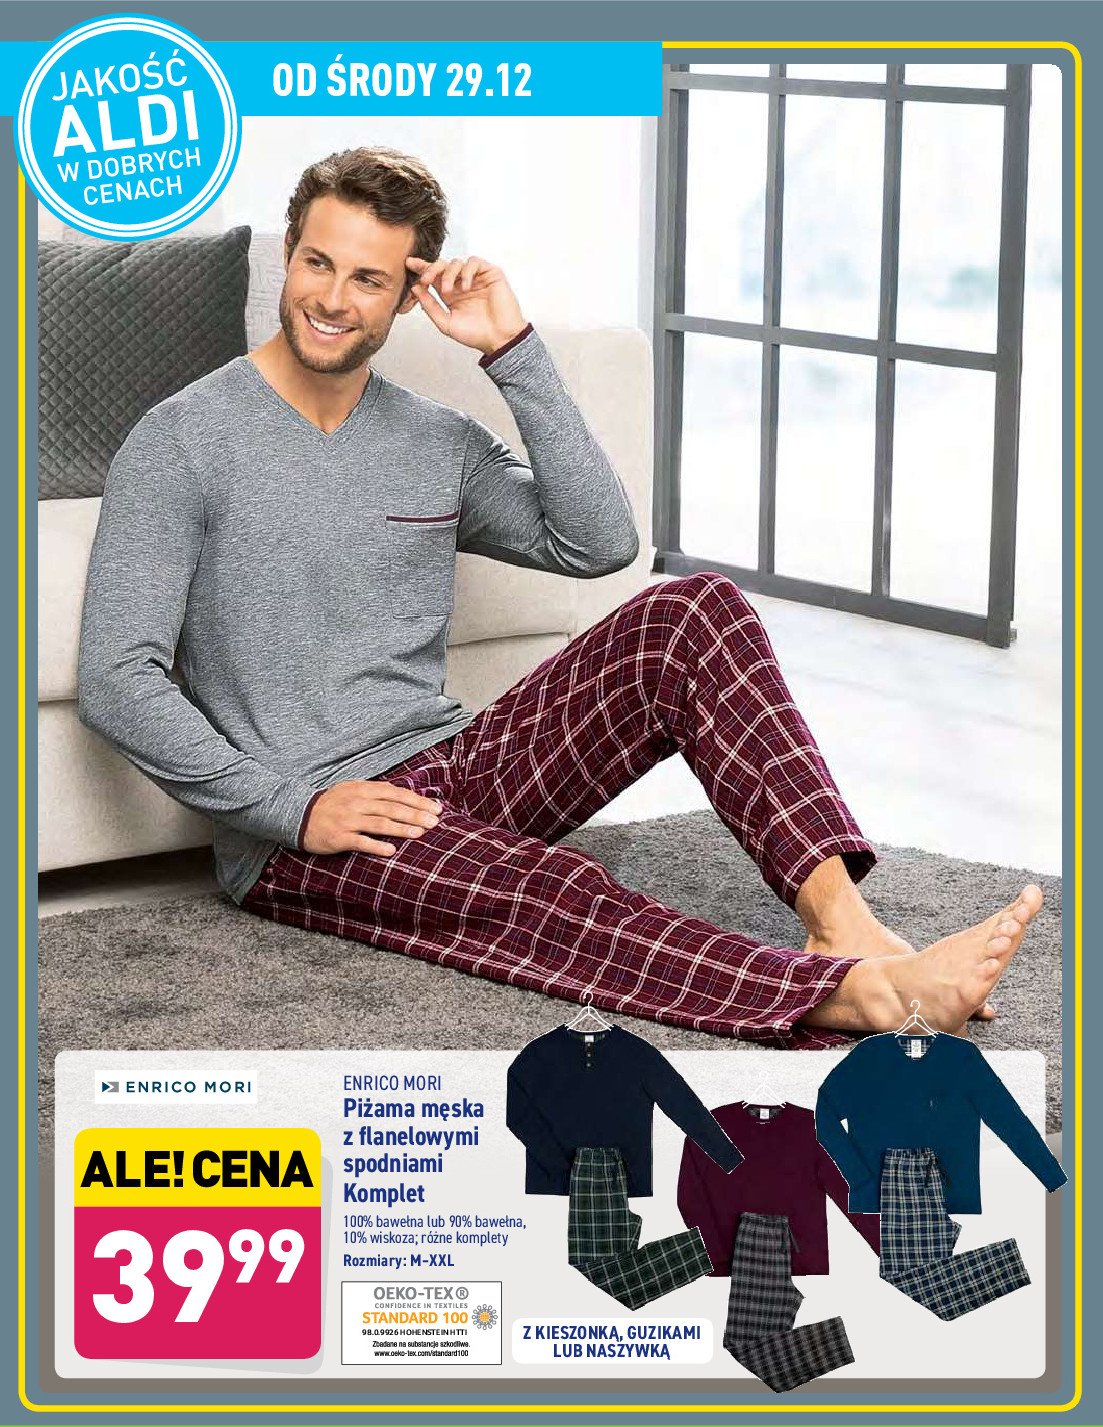 Piżama męska z flanelowymi spodniami m-xxl Enrico mori promocja